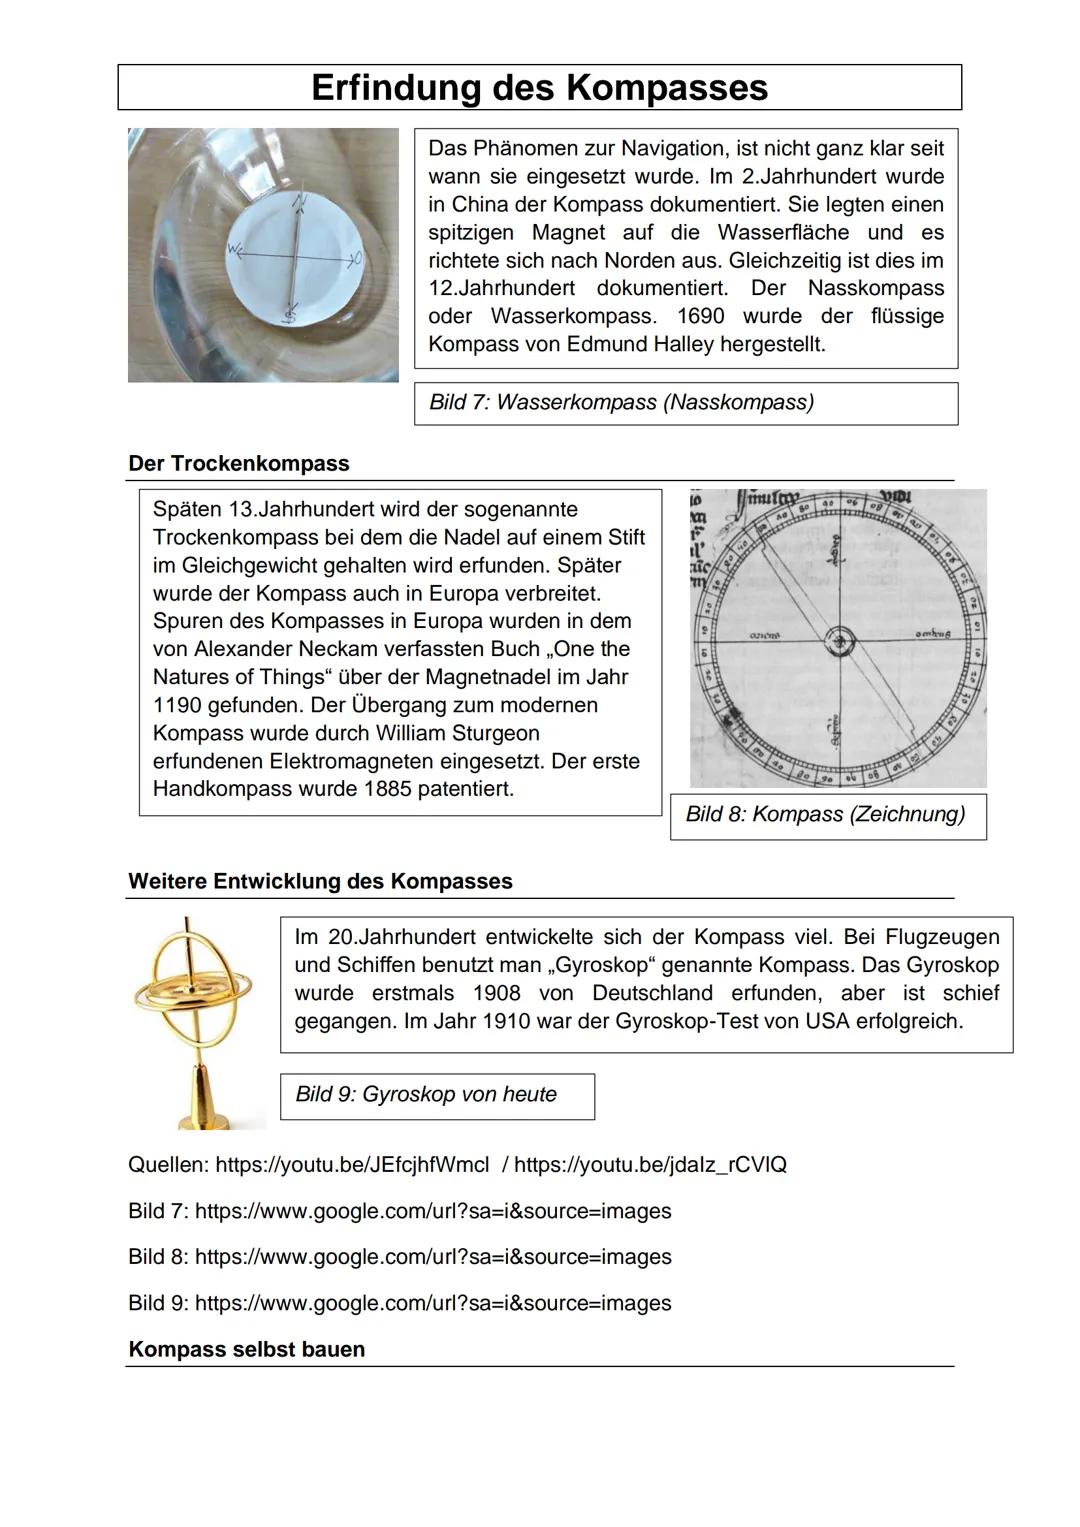 Erfindung des Kompasses
Schon um 6000 v.Chr. gab es in Niederlande Boote. Um 3500 v.Chr. verstärkte sich
der Seehandel im Naheosten. Um 3000